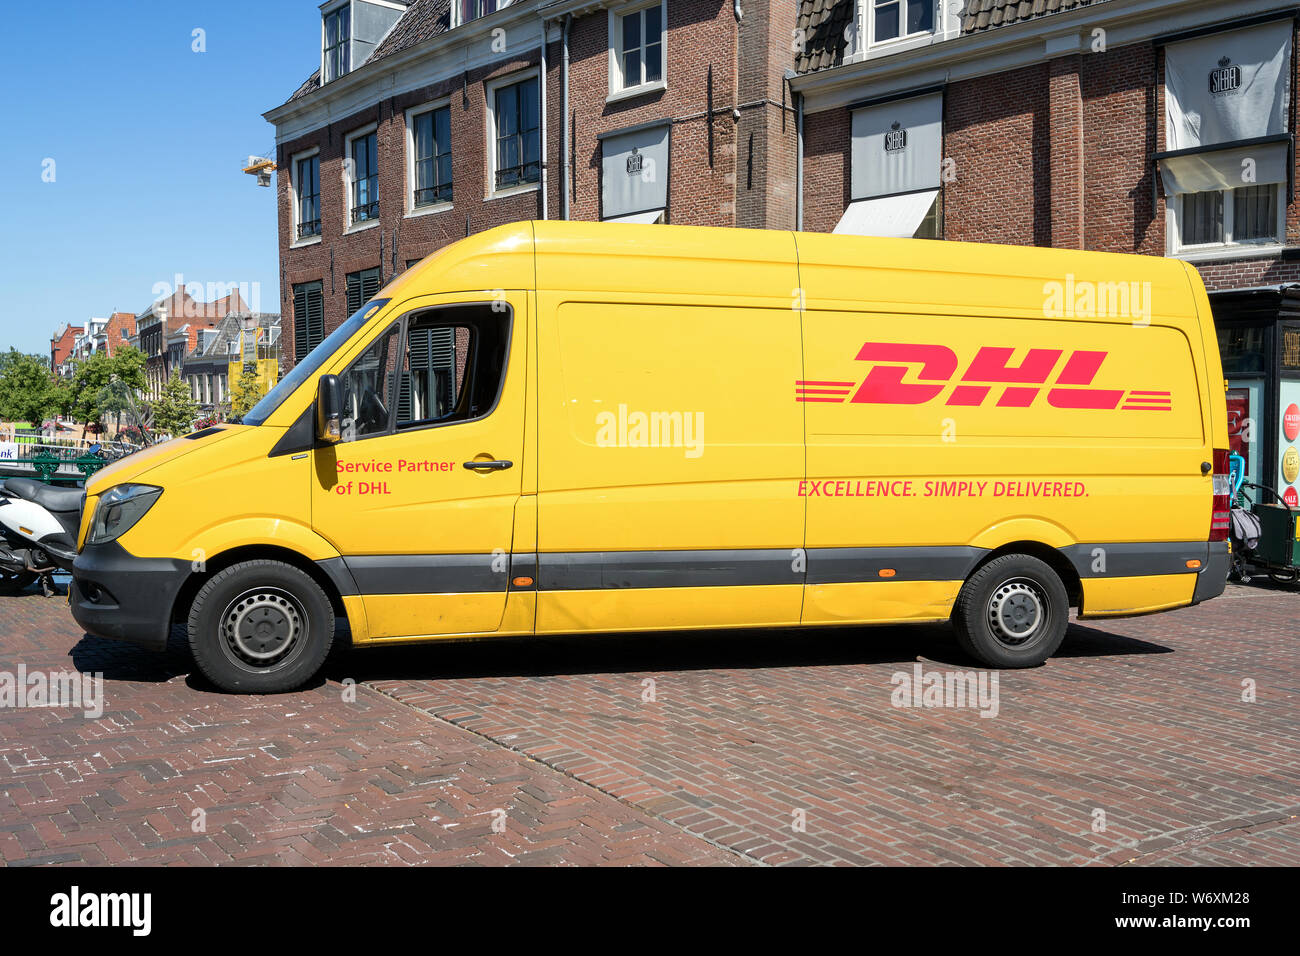 DHL entrega van. DHL es una división de la compañía de logística alemana Deutsche Post AG proporcionando servicios de correo expreso internacional. Foto de stock